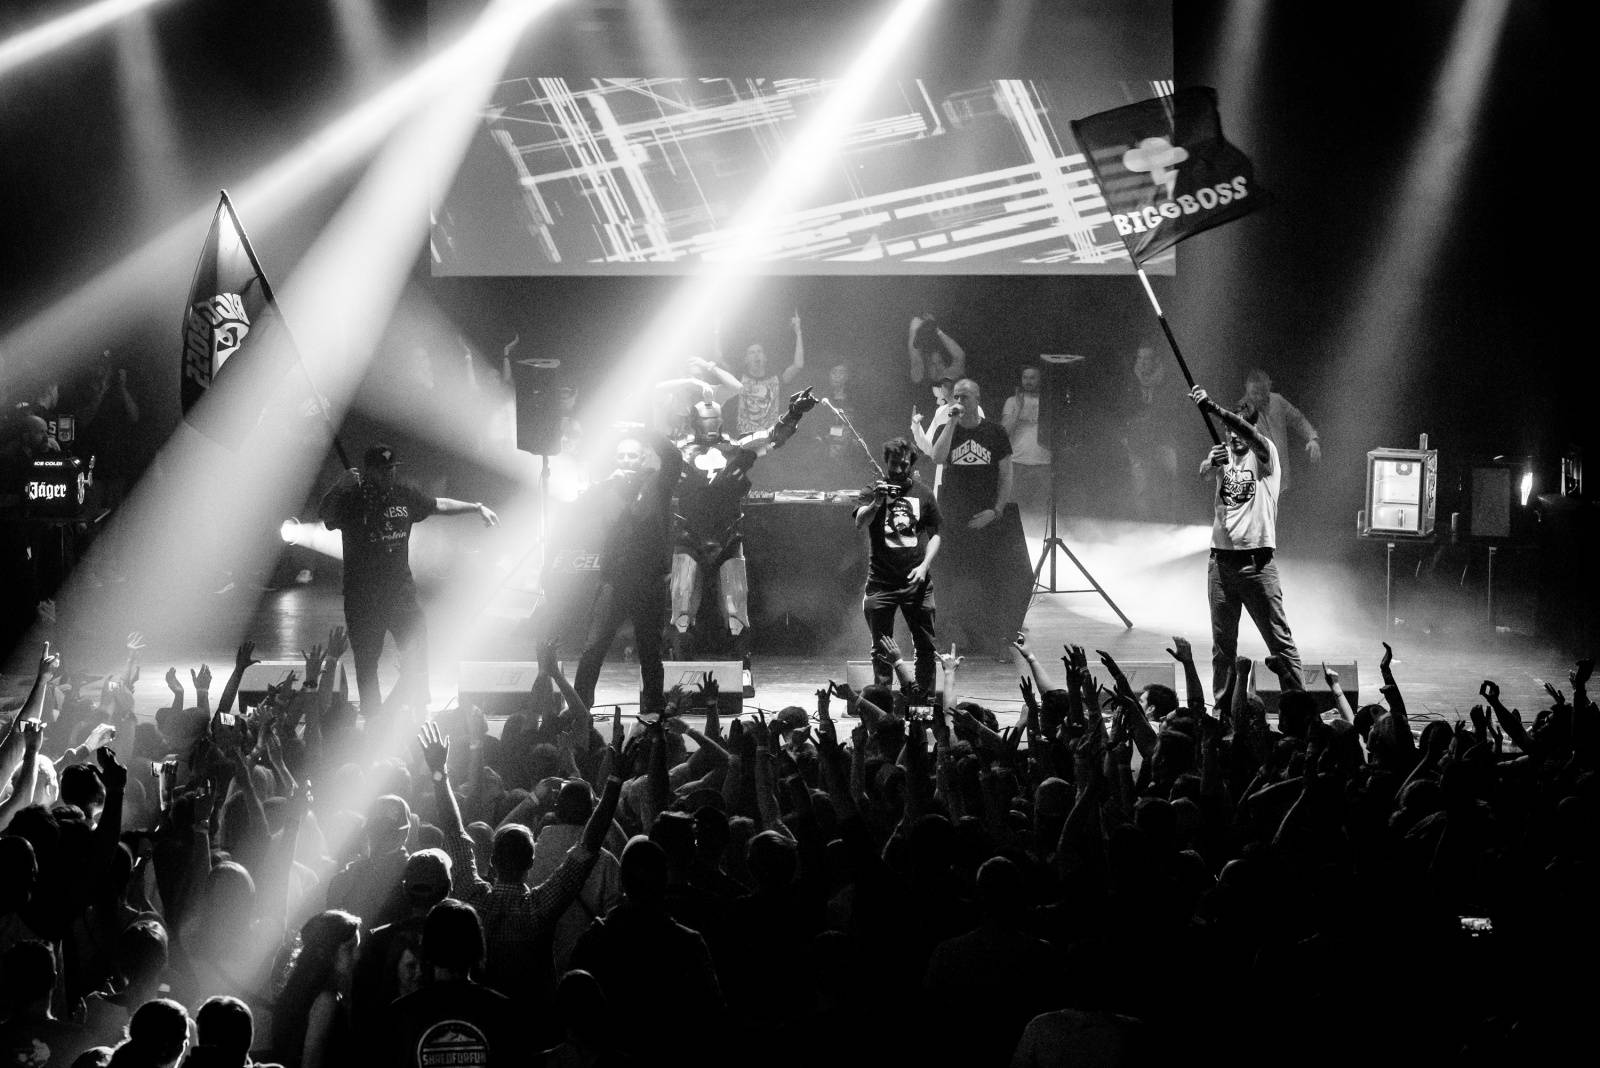 BiggBoss s PSH a dalšími hvězdami završil svou Rapmasters Tour v Brně